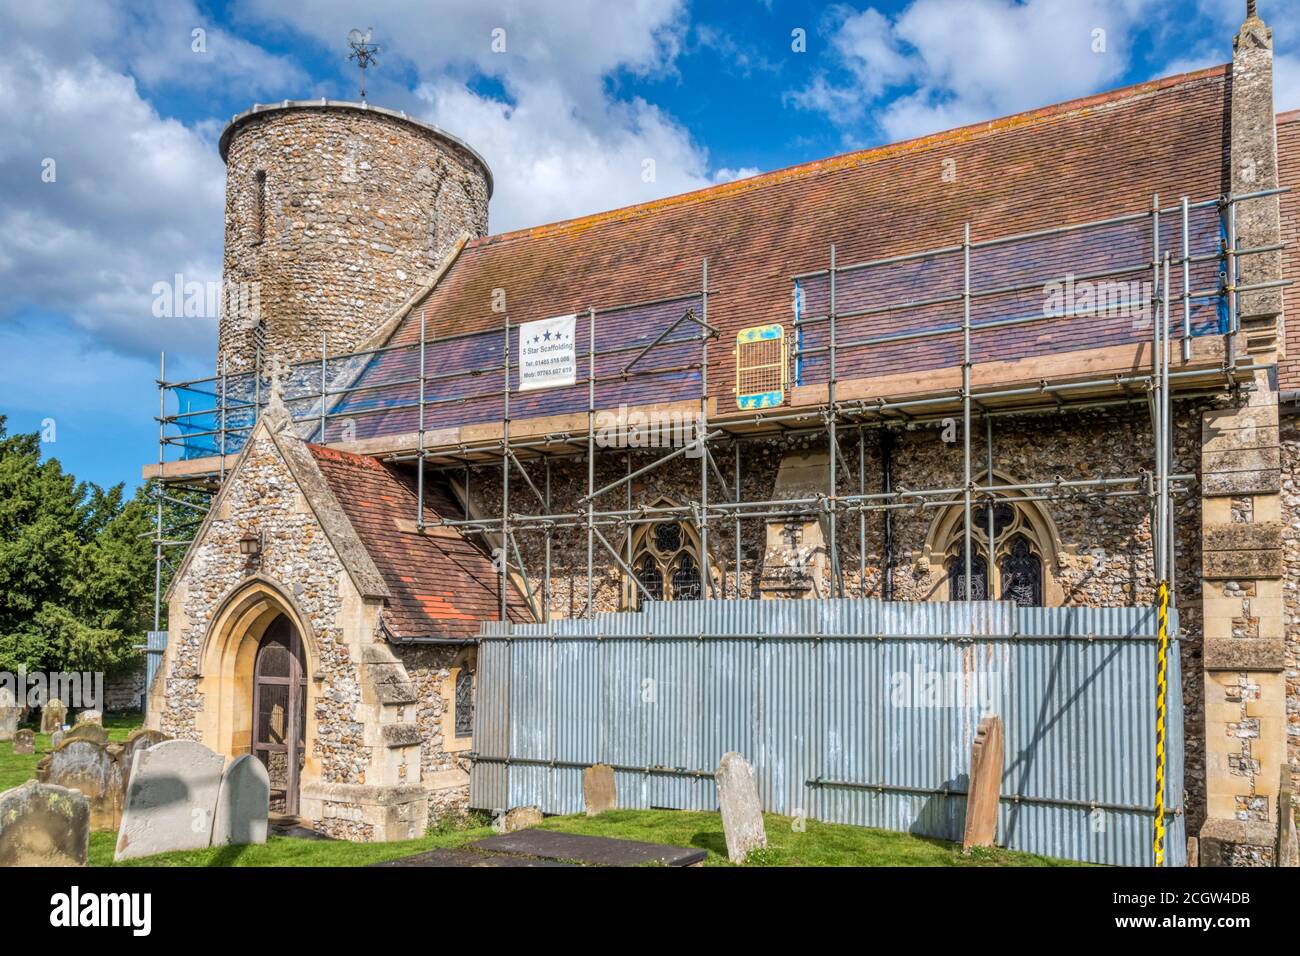 Ponteggi per lavori di riparazione al tetto della chiesa anglosassone tondeggiante di selce di St Mary a Burnham Deepdale sulla costa nord del Norfolk. Foto Stock